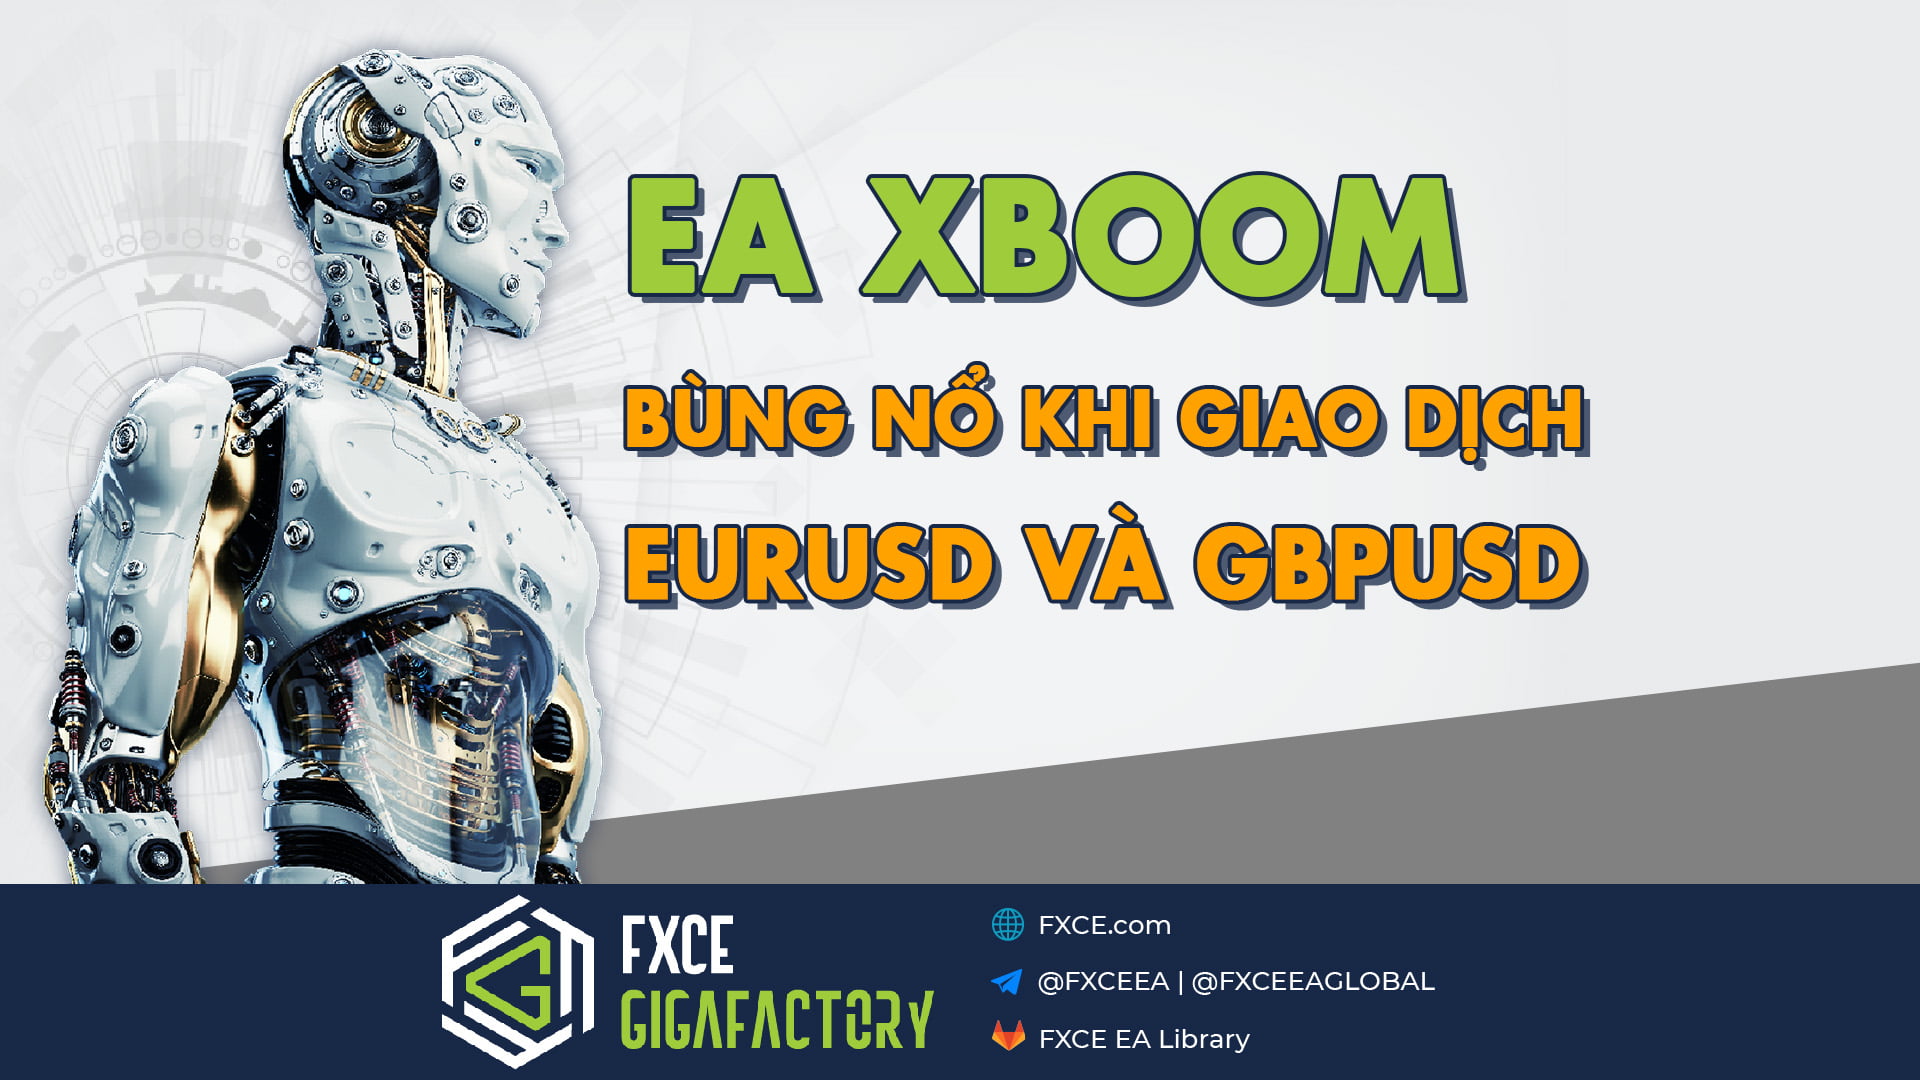 FXCE EA XBoom